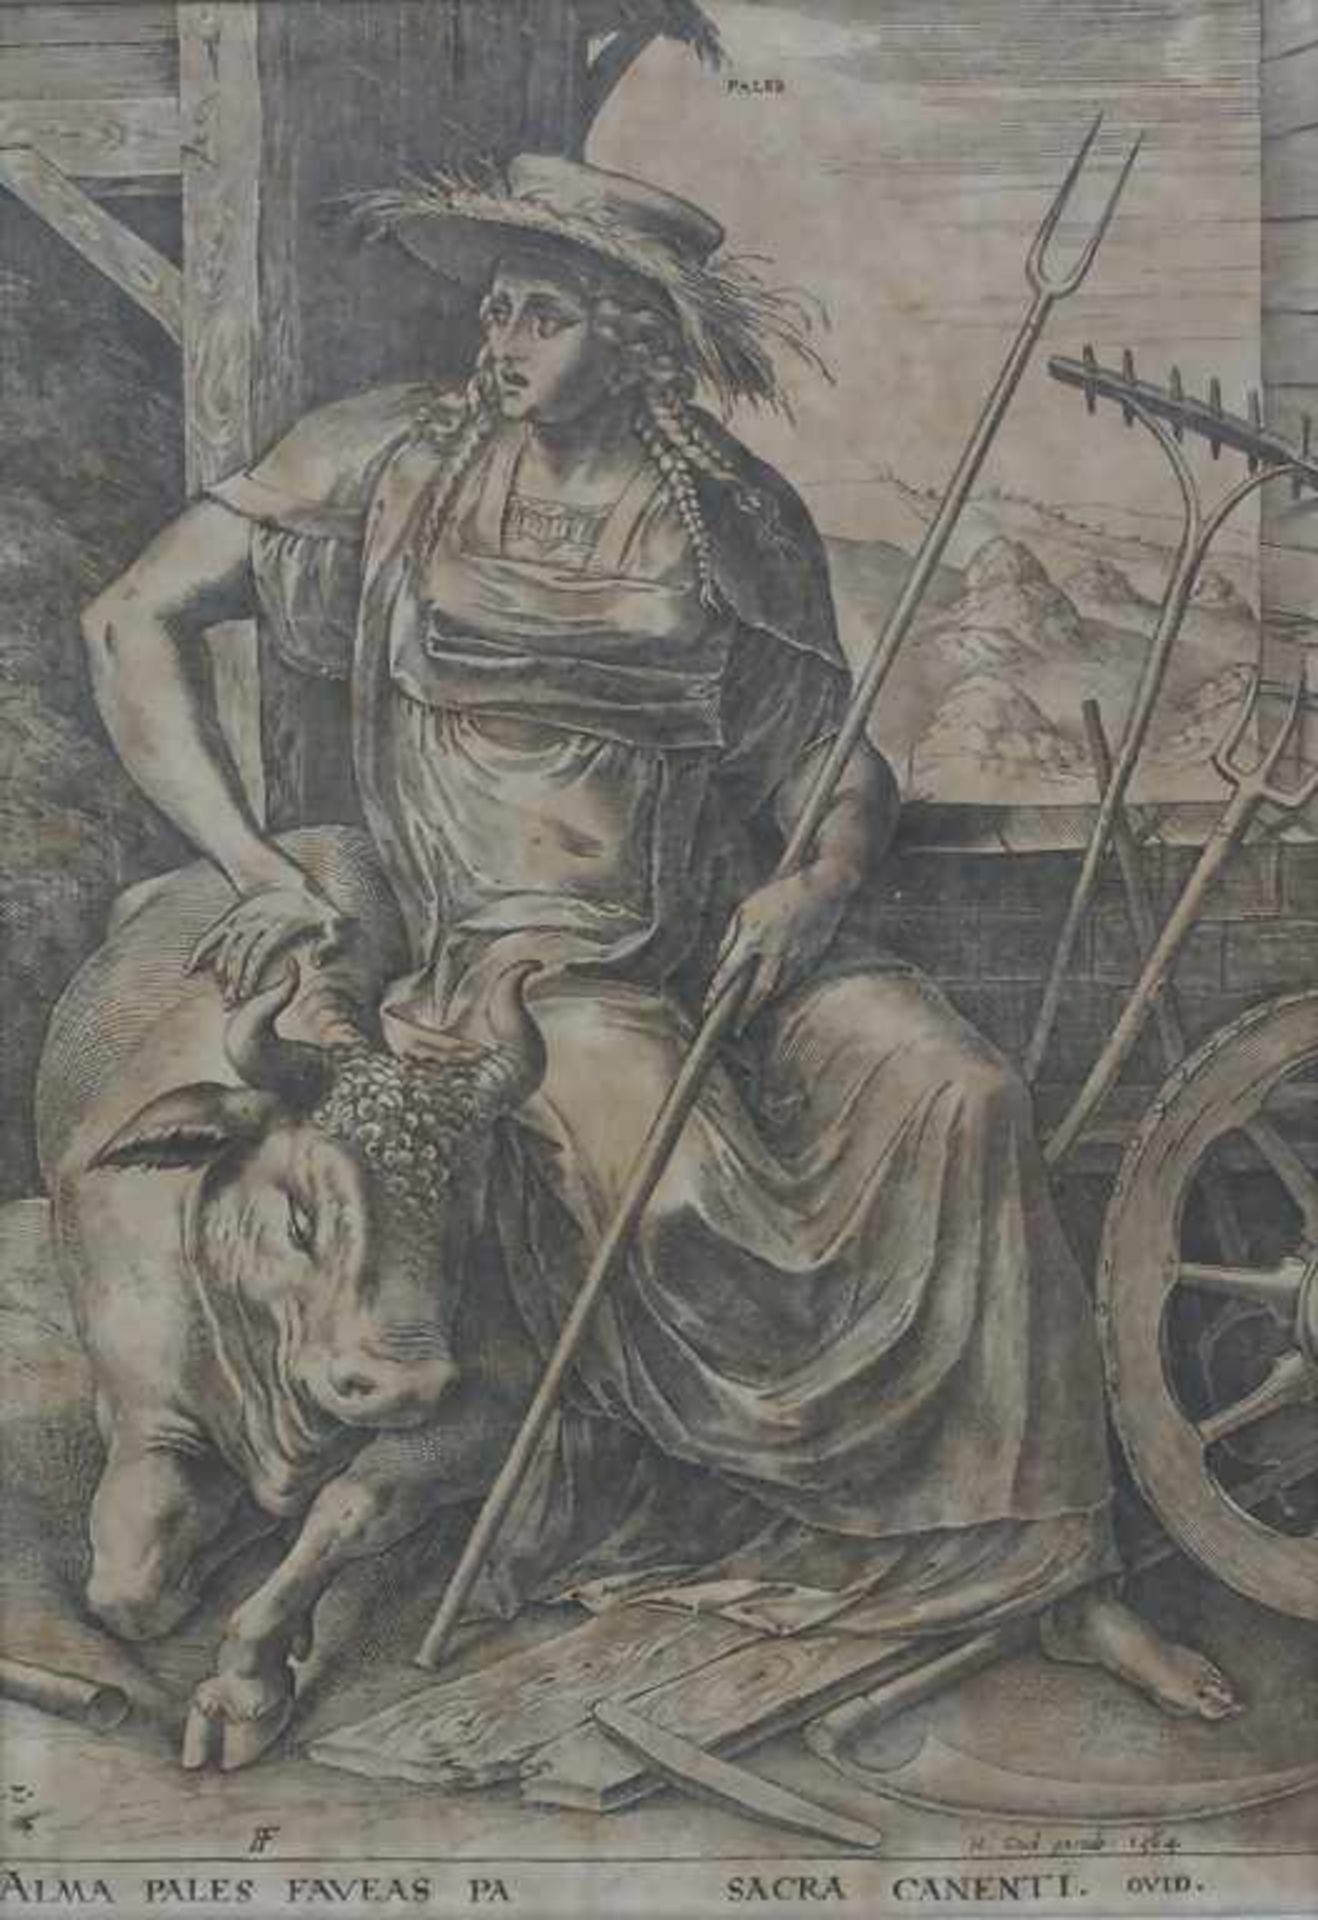 Frans Huys (1522-1562), 'Alma Pales Faveas Pa'Technik: Kupferstich auf Papier, gerahmt, hinter